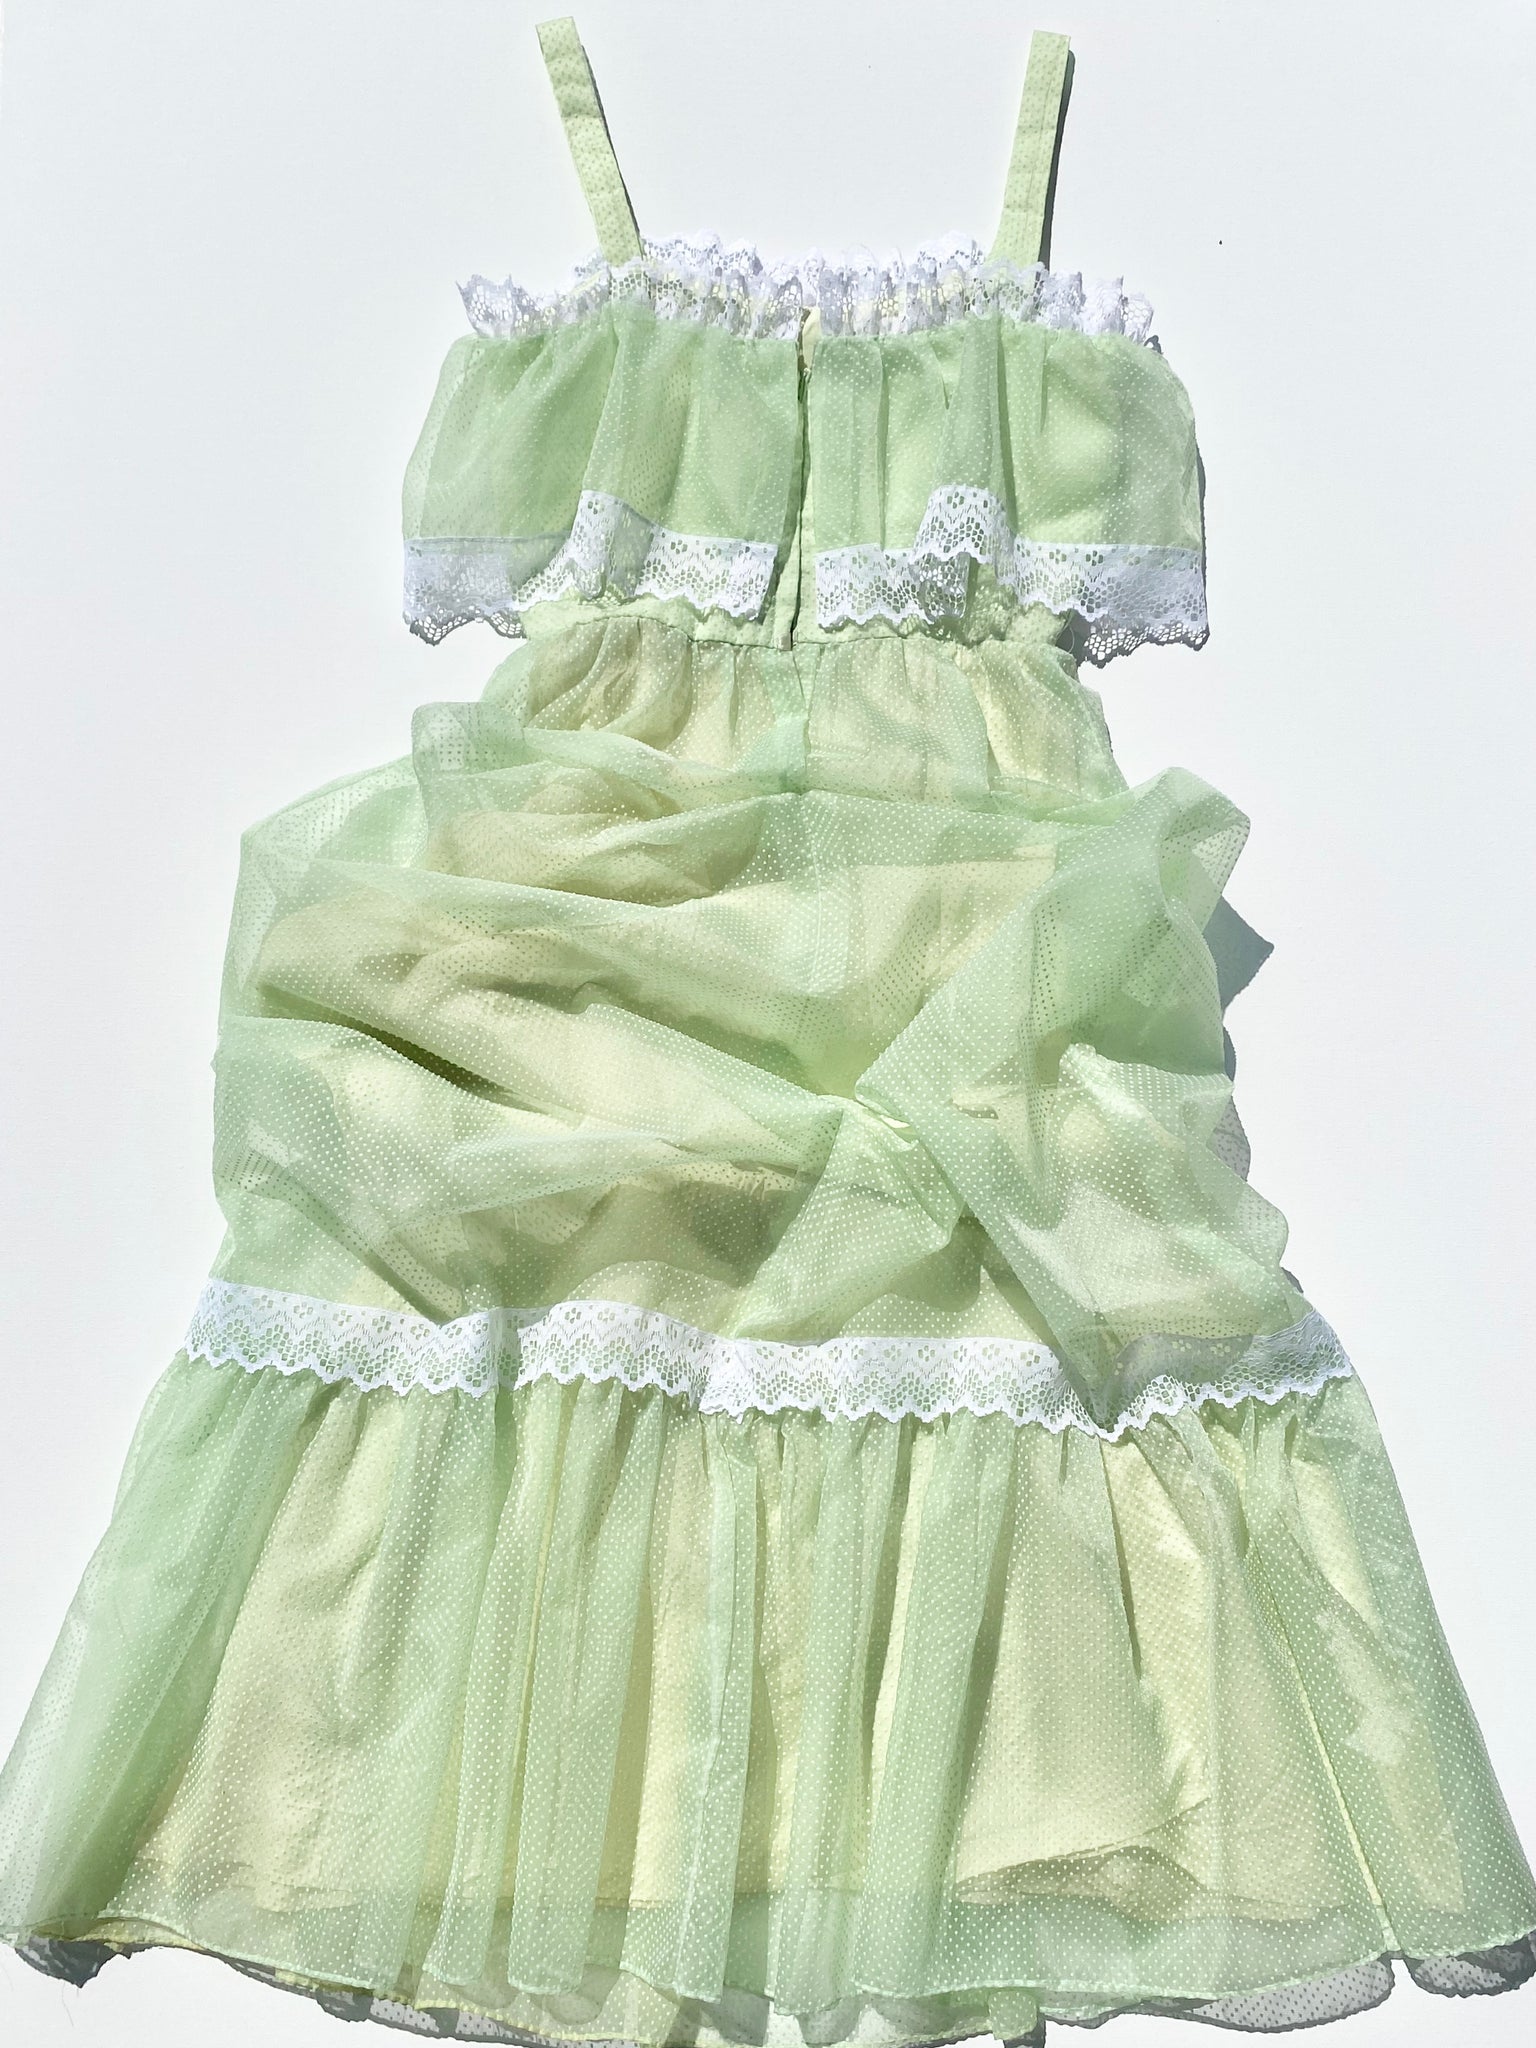 VINTAGE: Formal Dress - Pale Green